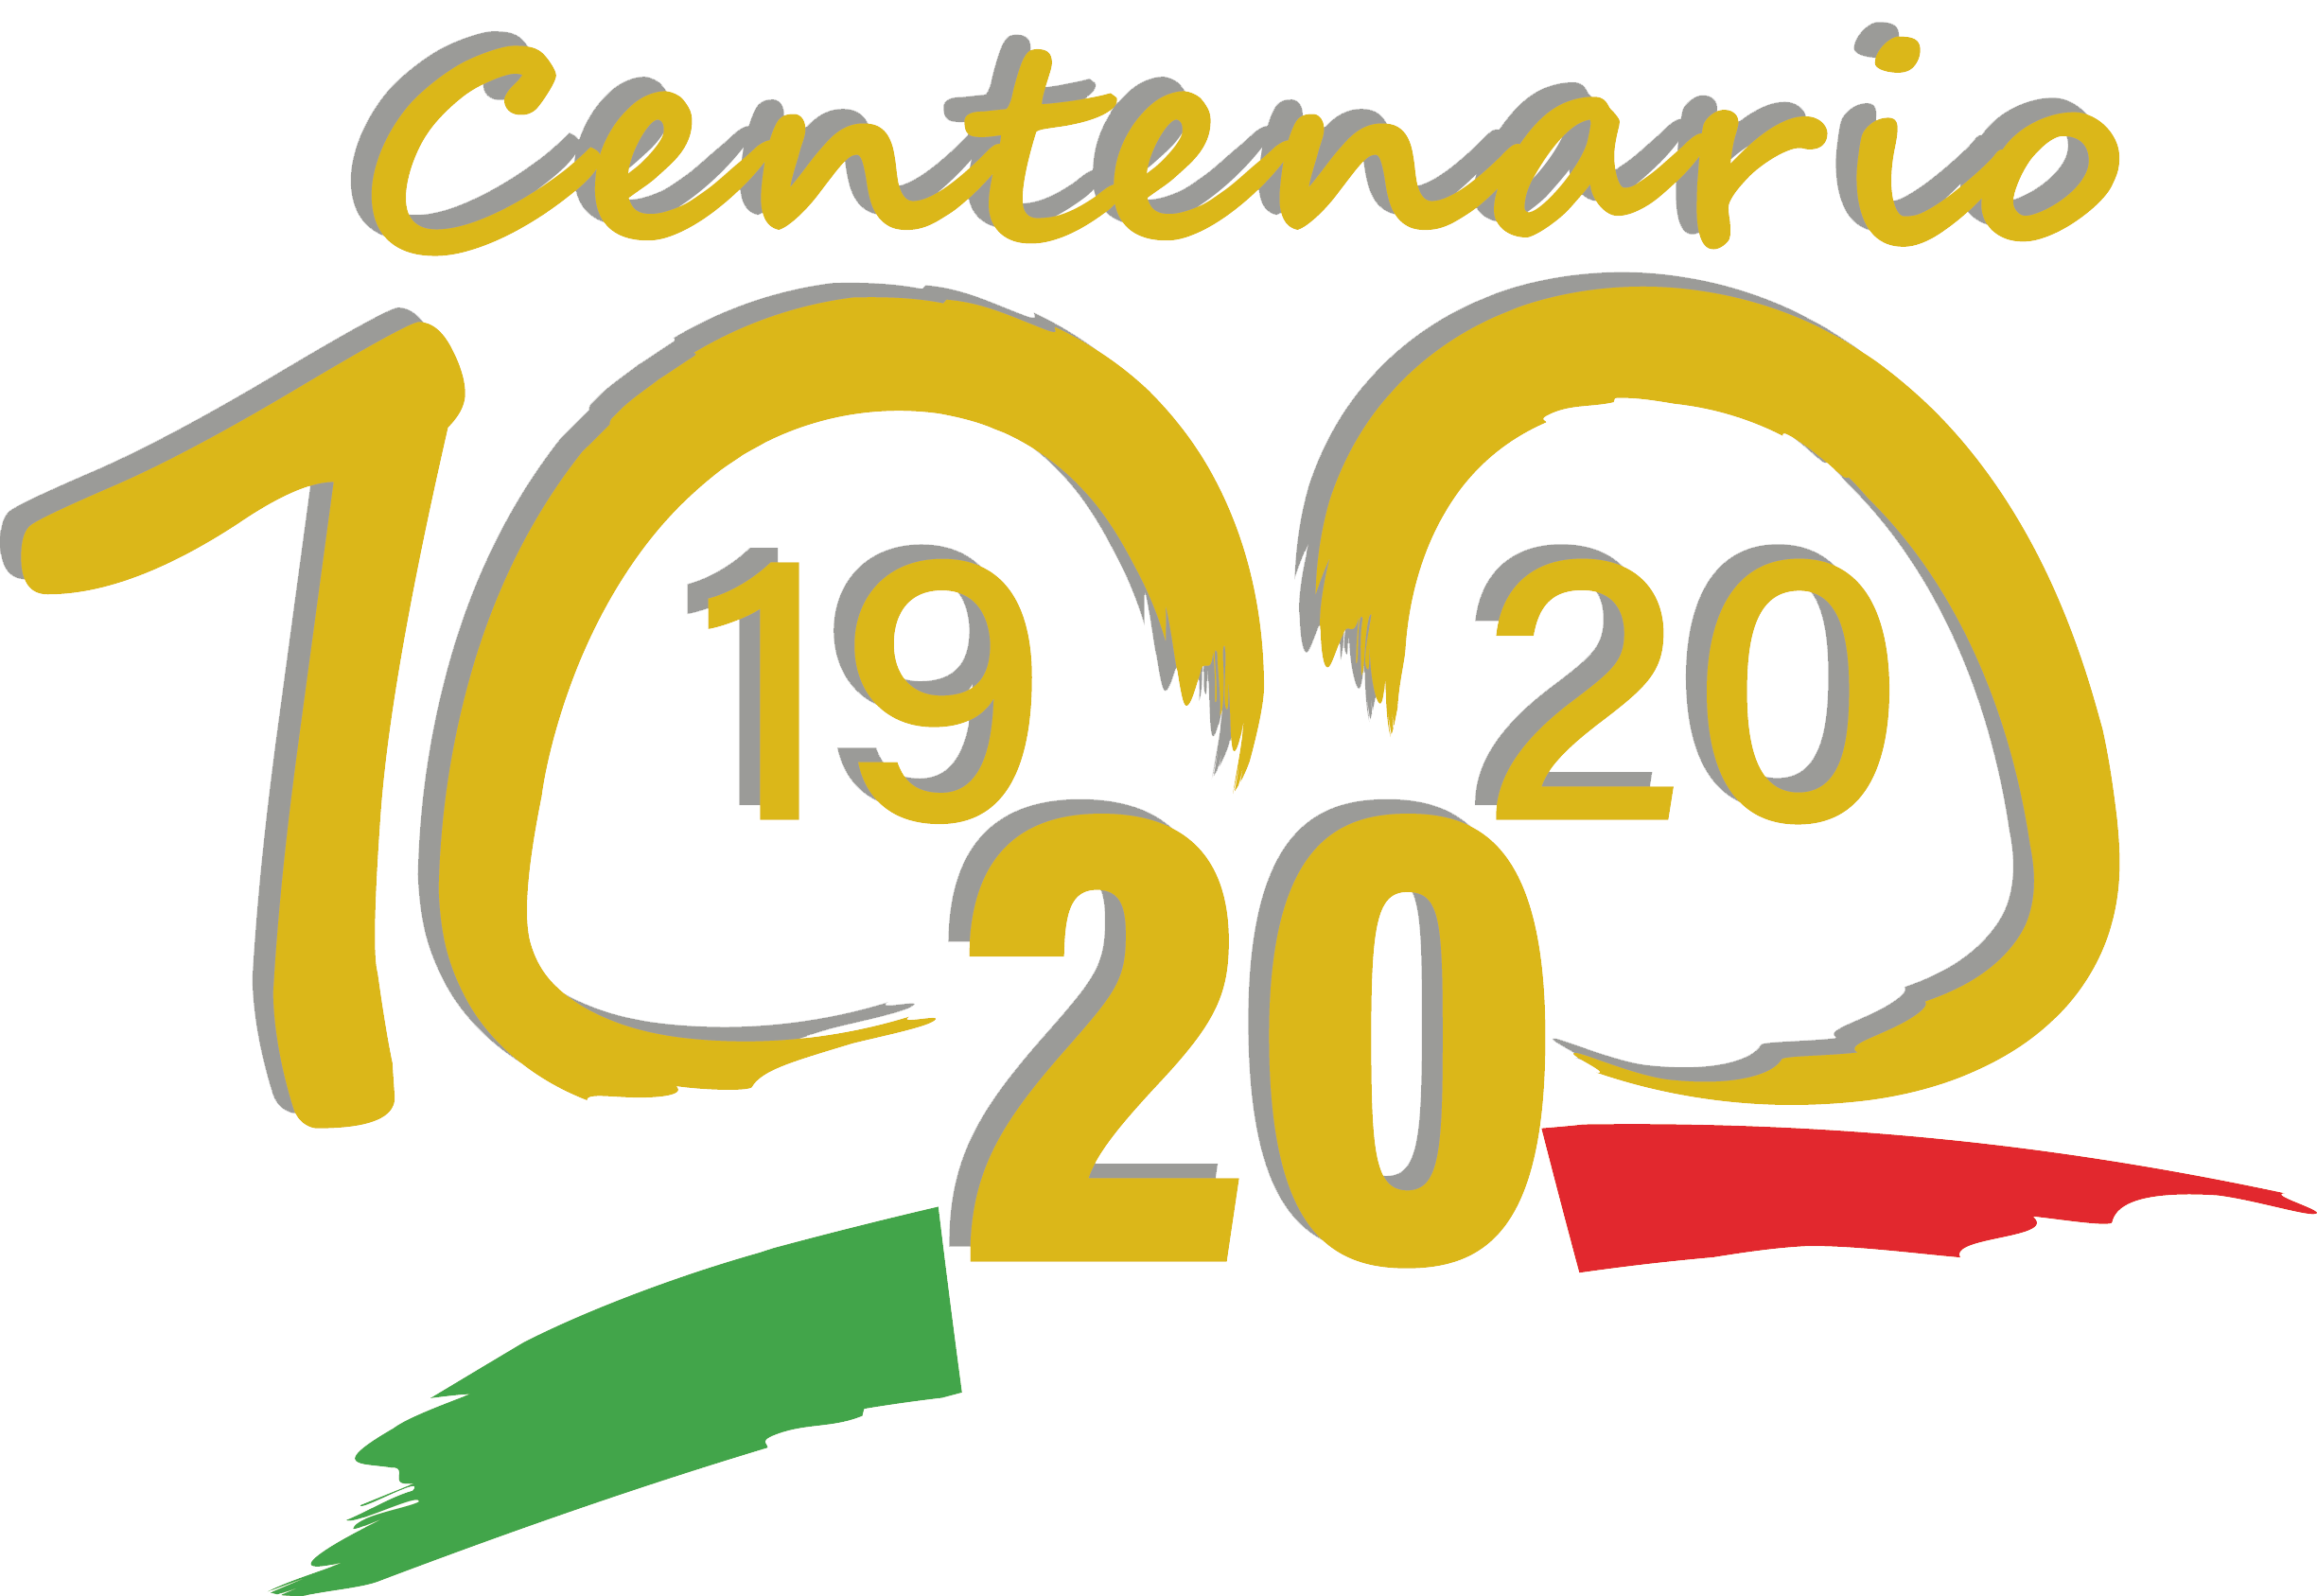 Logo del centenario dell'UICI. In alto la scritta centenario in dorato.Al centro il numero 100 in dorato.In basso, il tricolore italiano con sopra l’indicazione dell’anno di fondazione (1920) e dell’anno del centenario (2020)